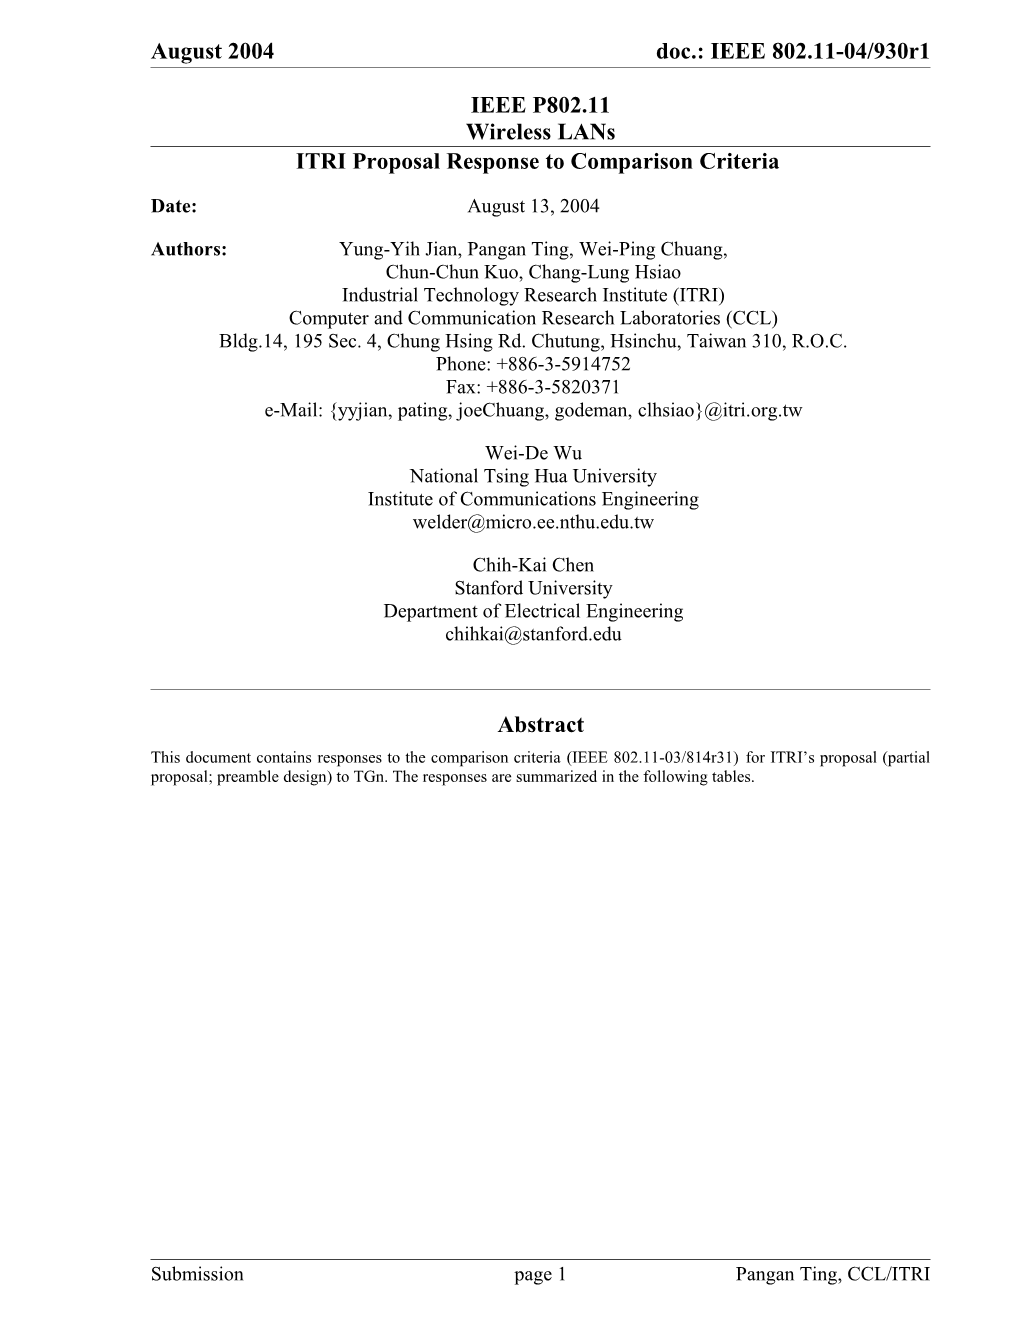 ITRI Proposal Response to Comparison Criteria